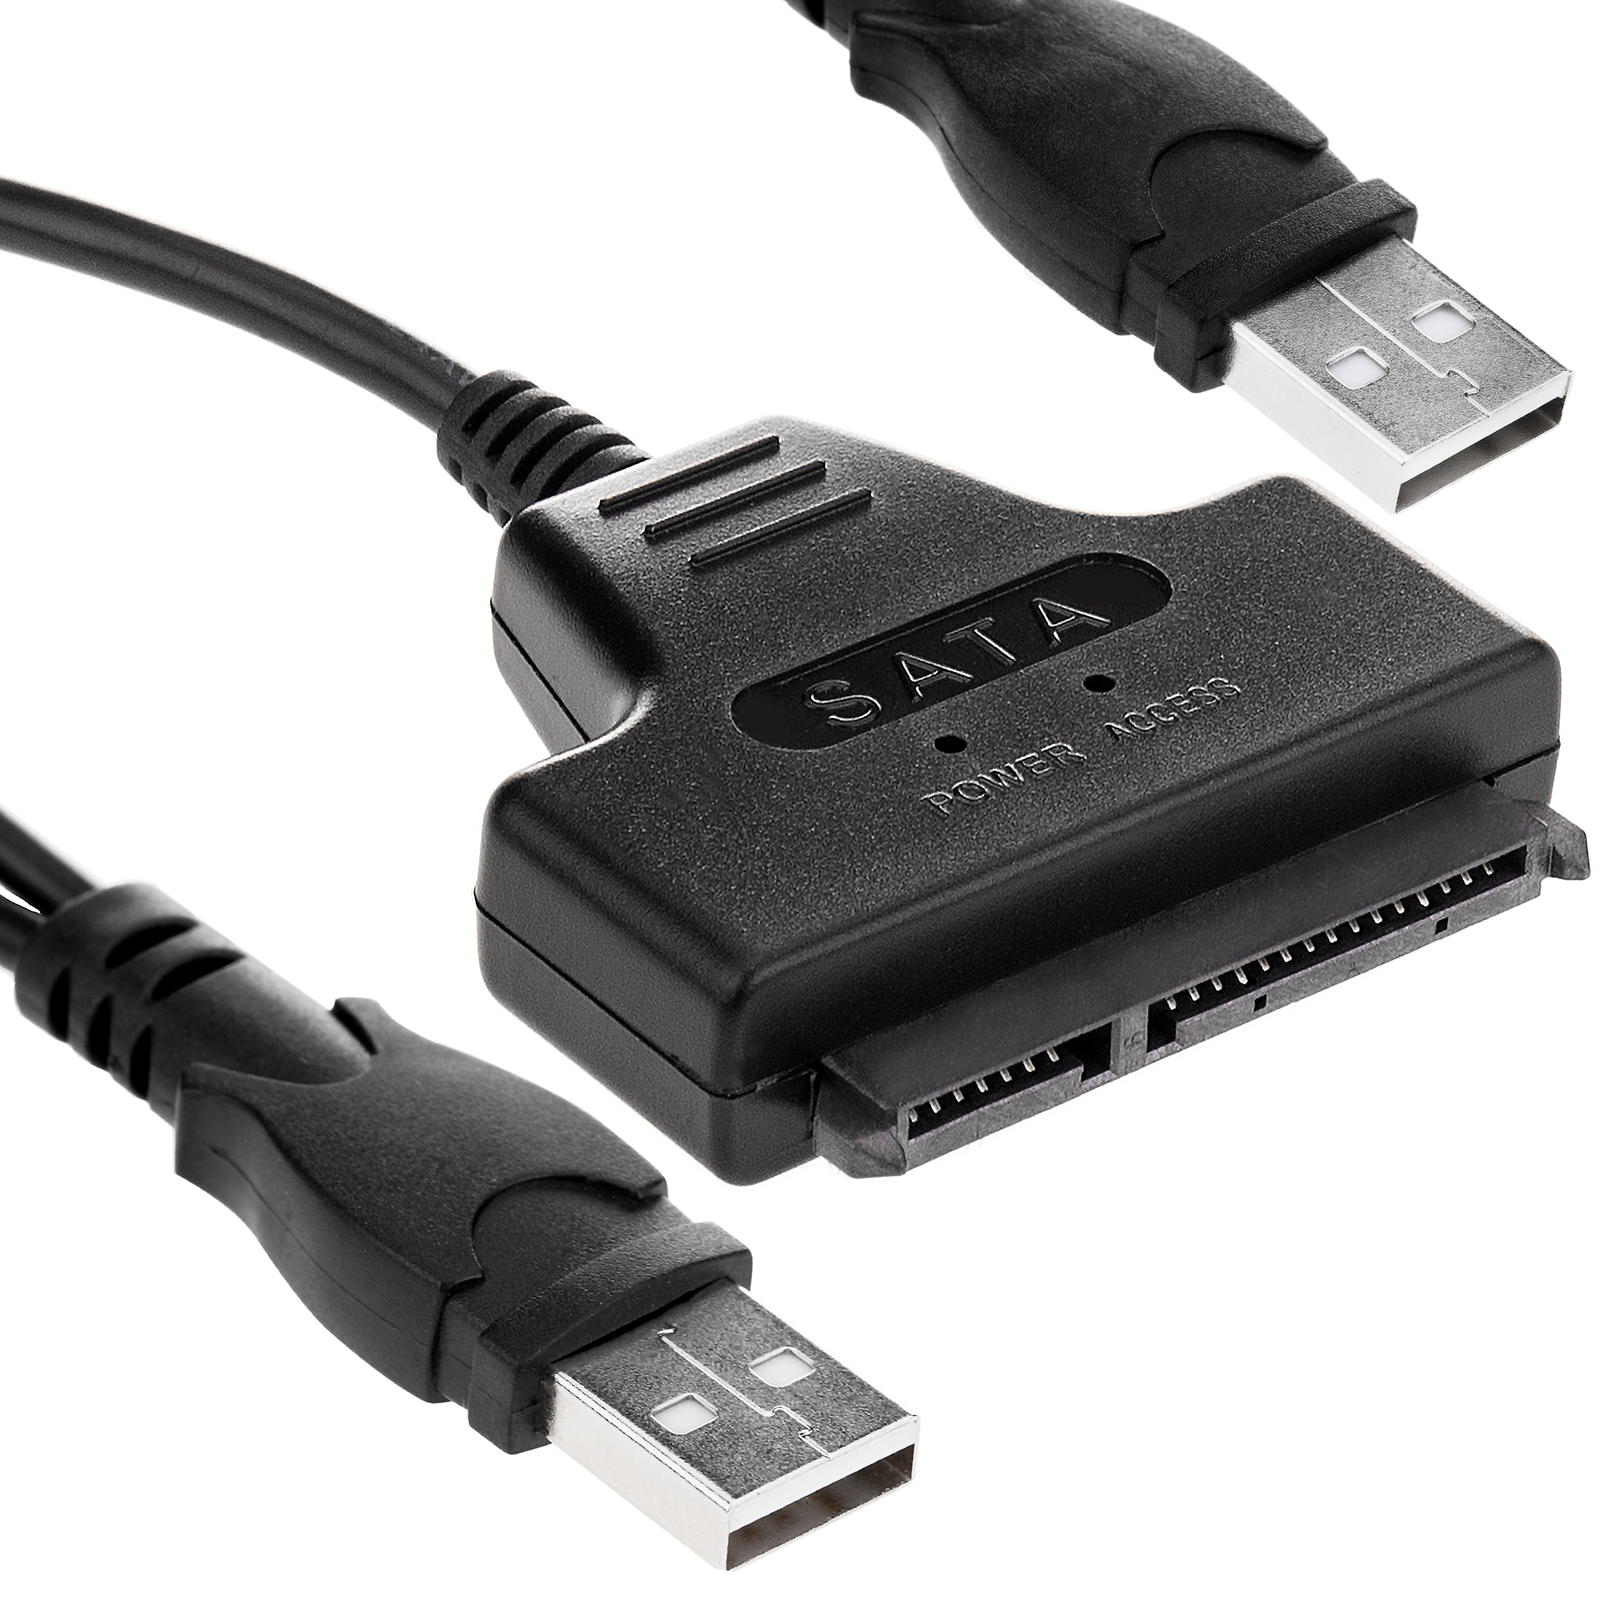 SATA câble de données USB 2.0 et le pouvoir - Cablematic